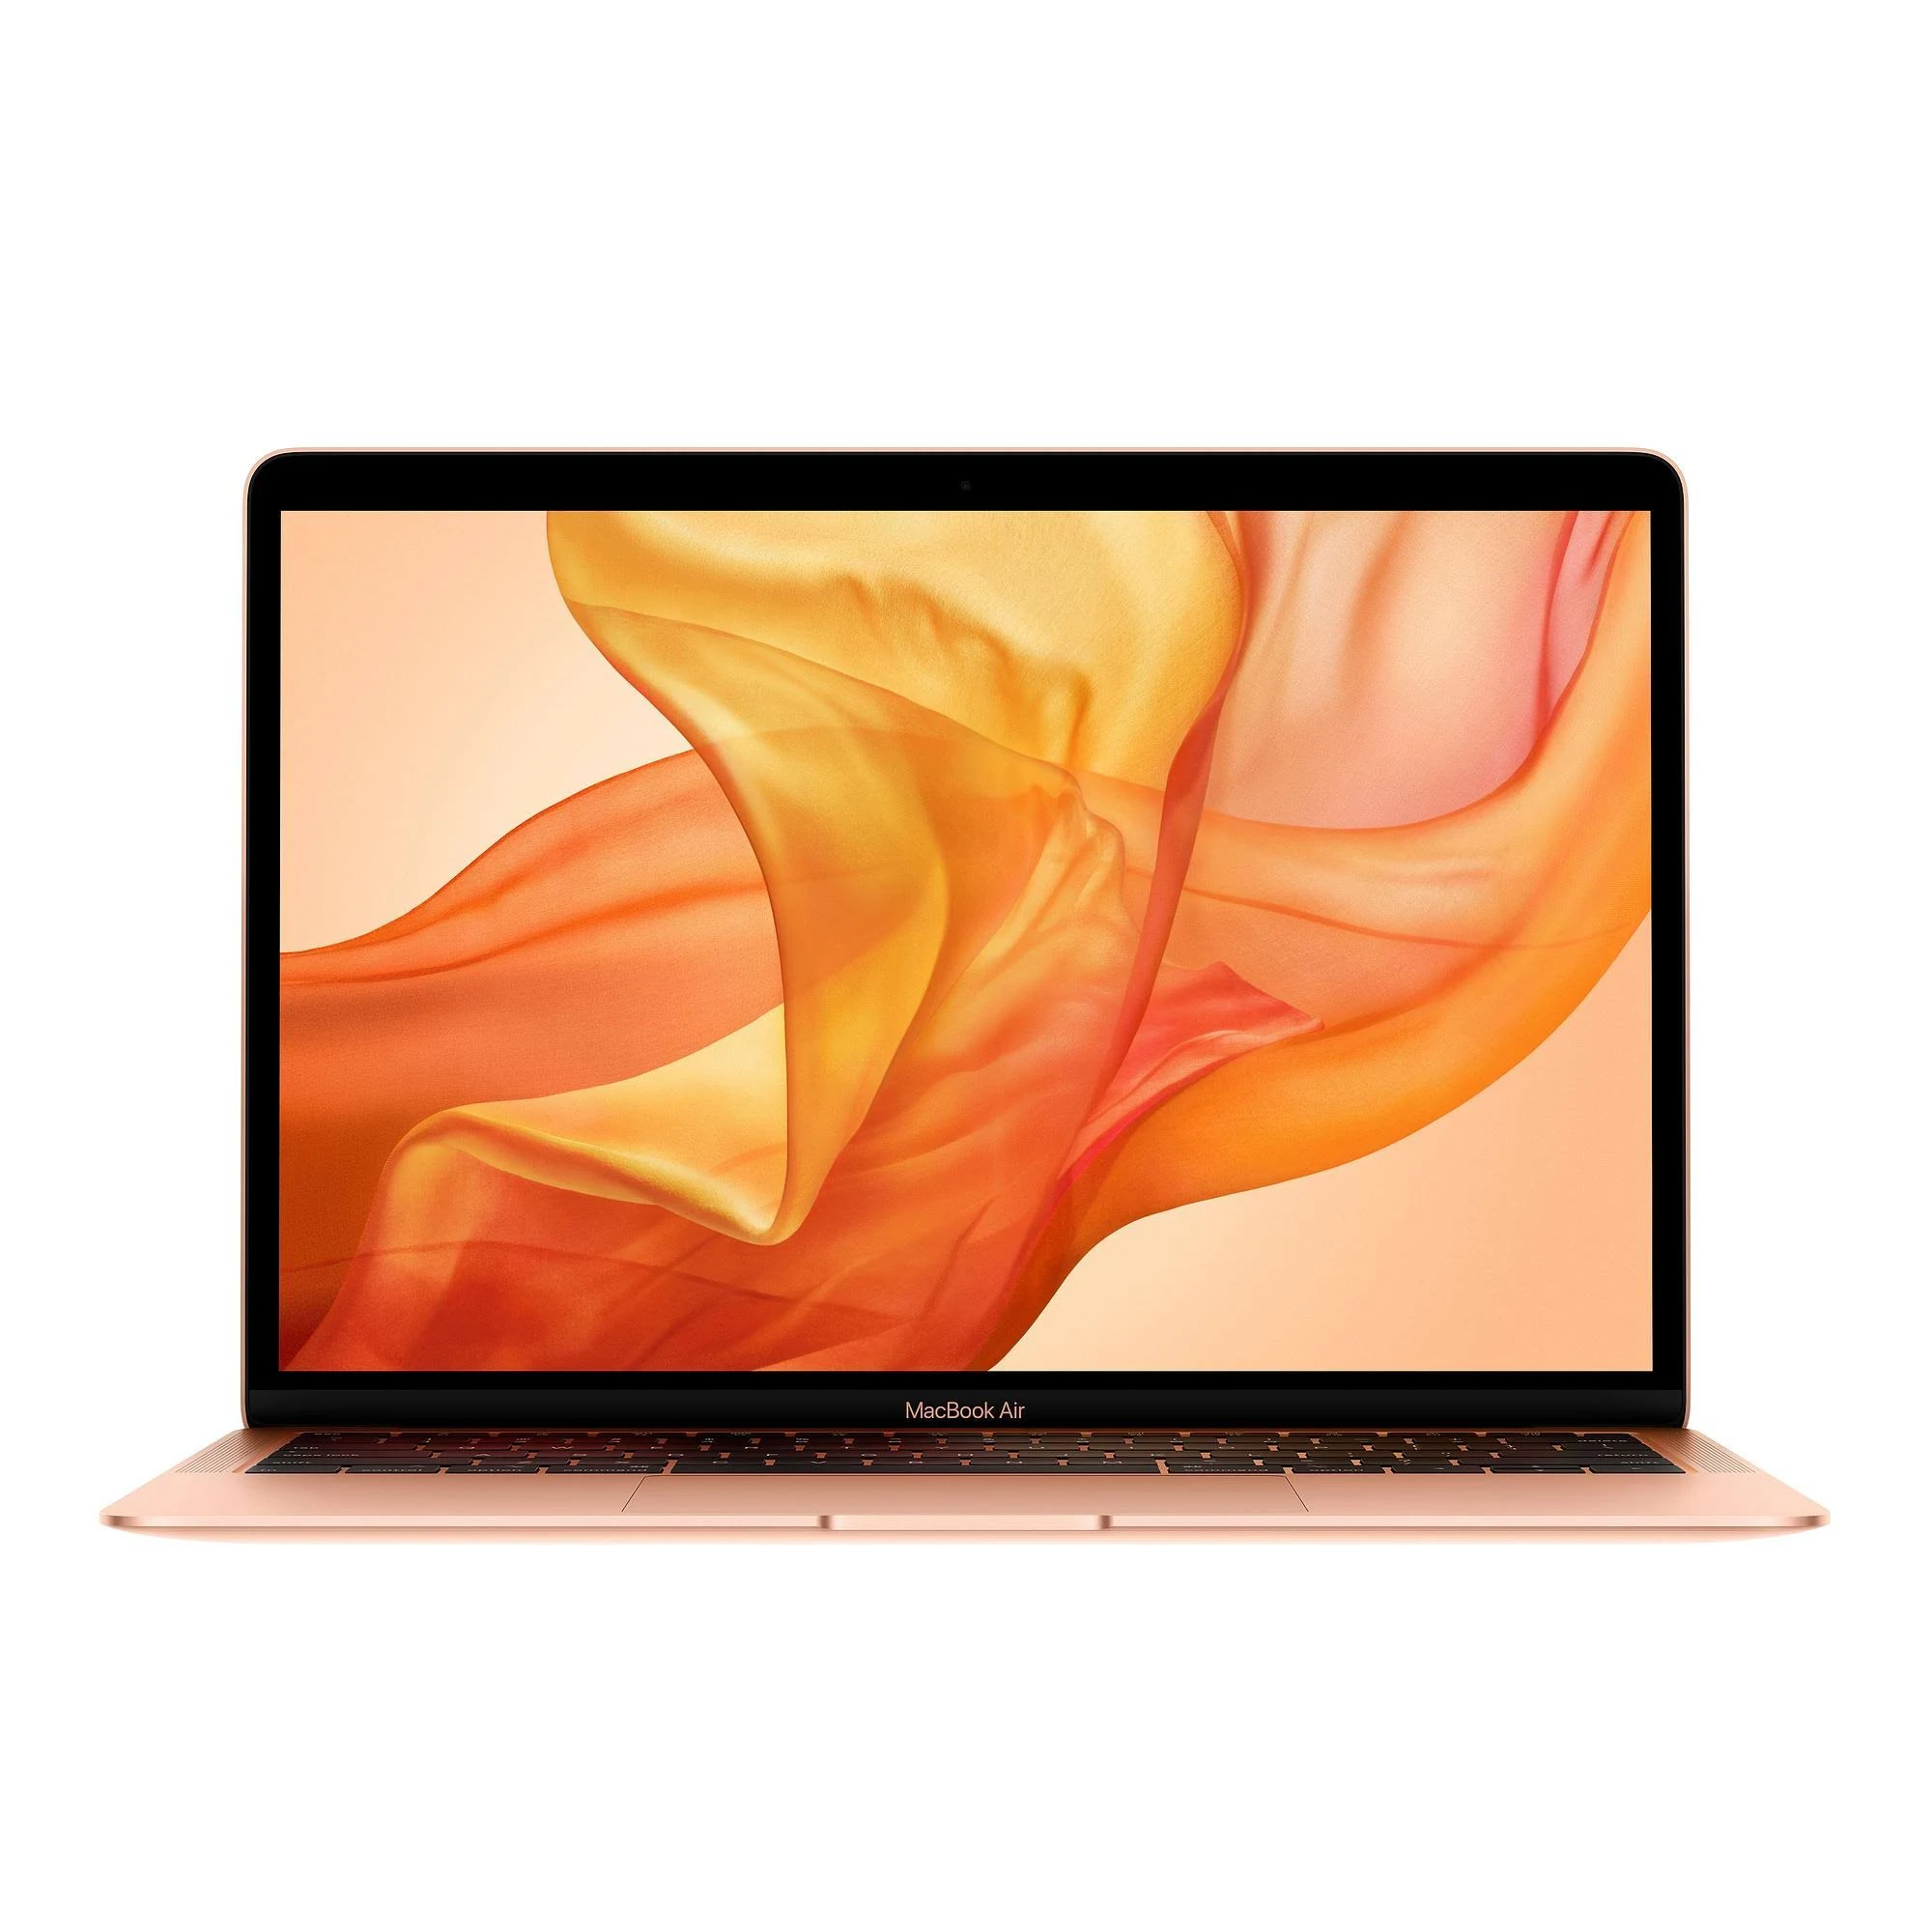 MacBook Air 13 inch True Tone 2019 i5 1.6GHz - 512GB SSD - 16GB Ram 512GB Space Grey Good